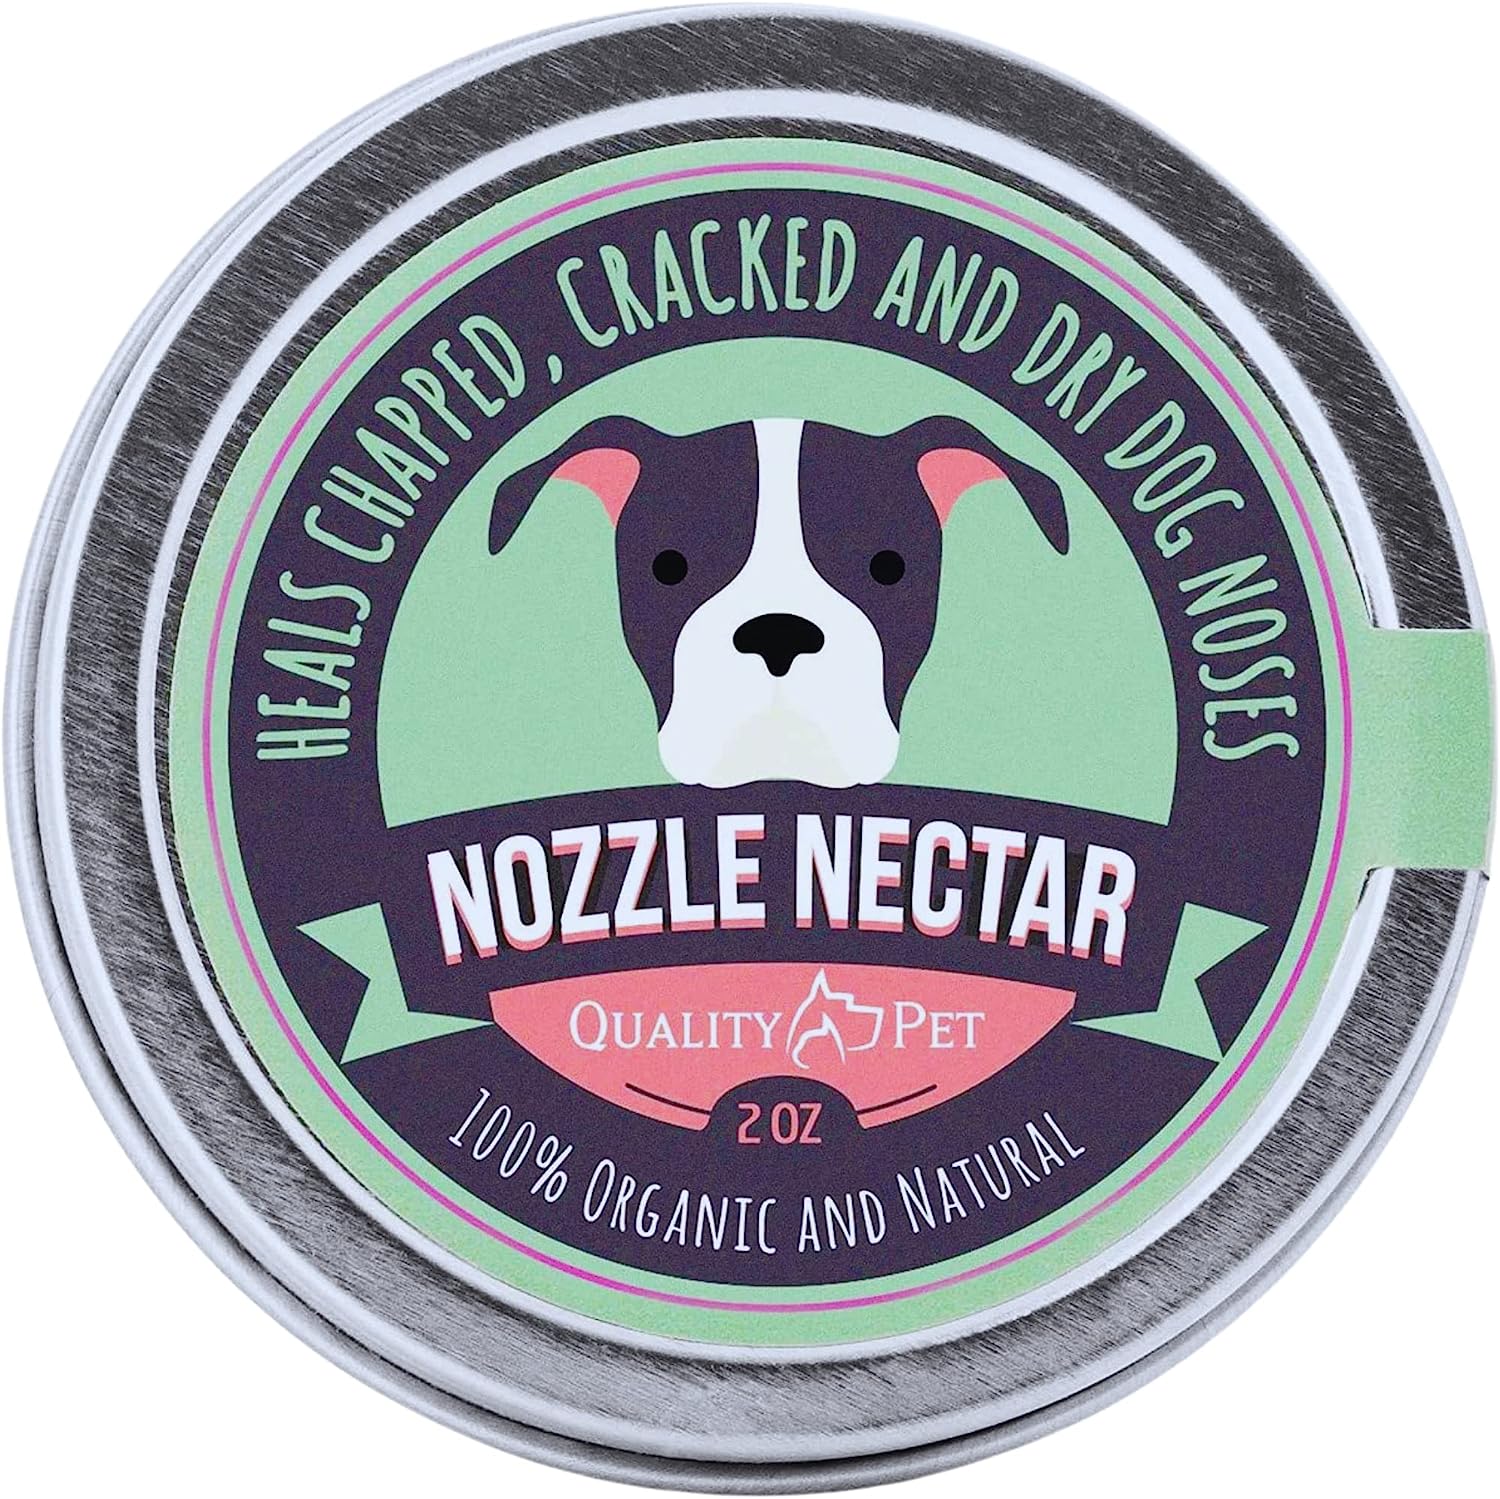 2. Nozzle Nectar Hond Neus Balsem